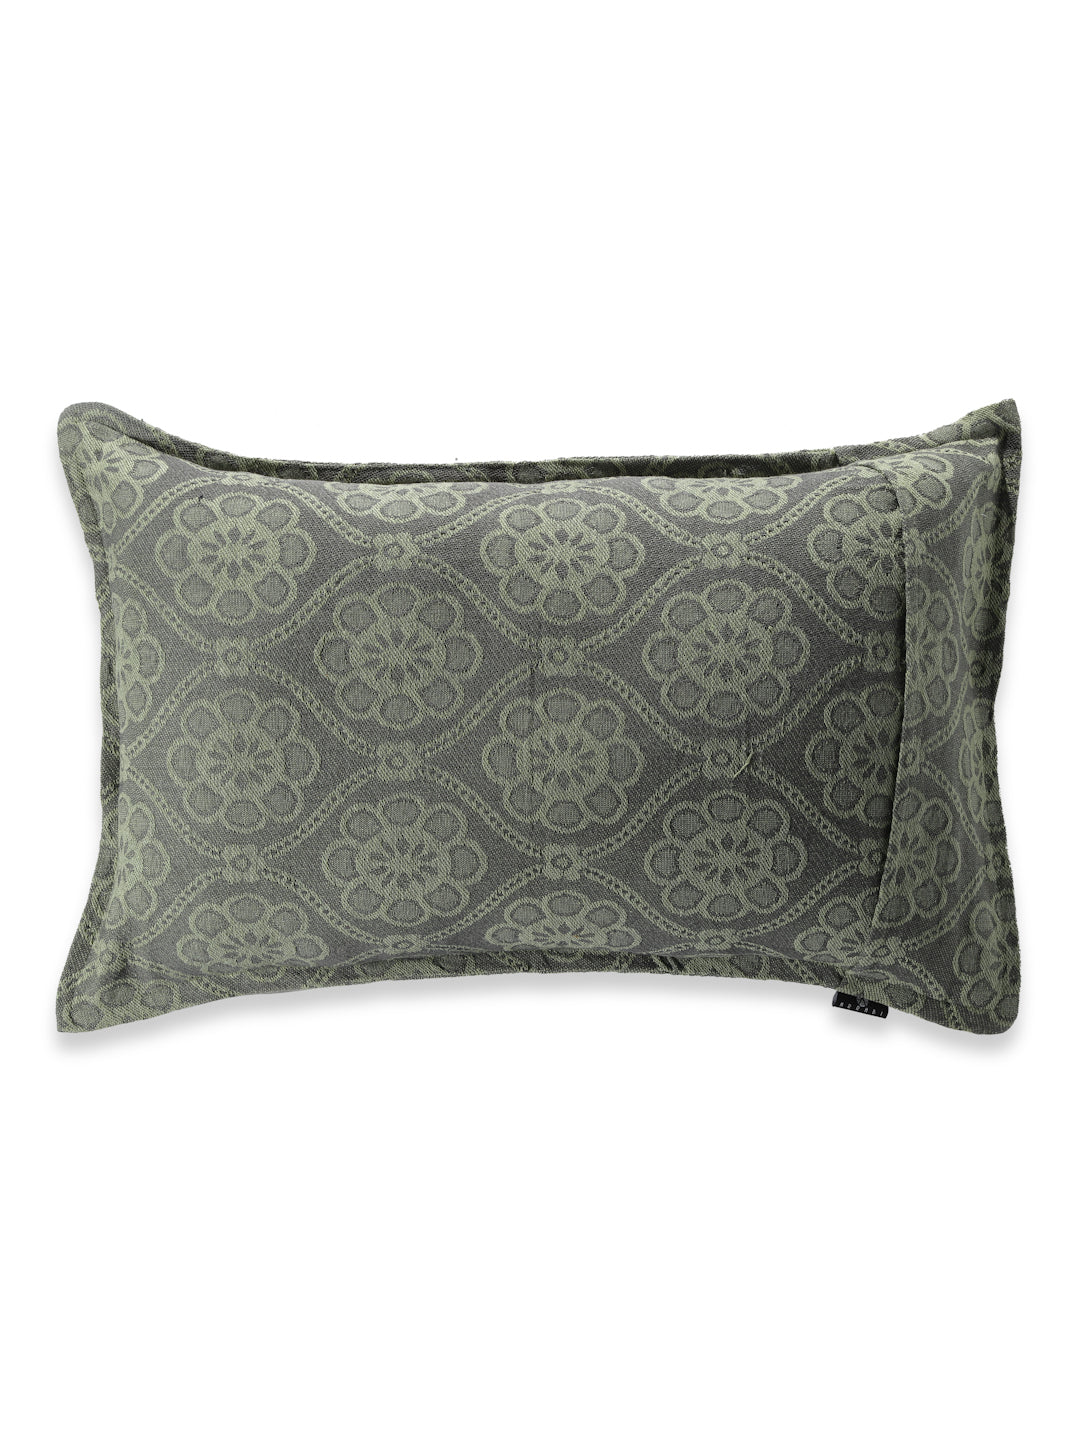 Arrabi Beige Floral Handwoven Cotton Set of 2 Pillow Covers (70 x 45 cm)